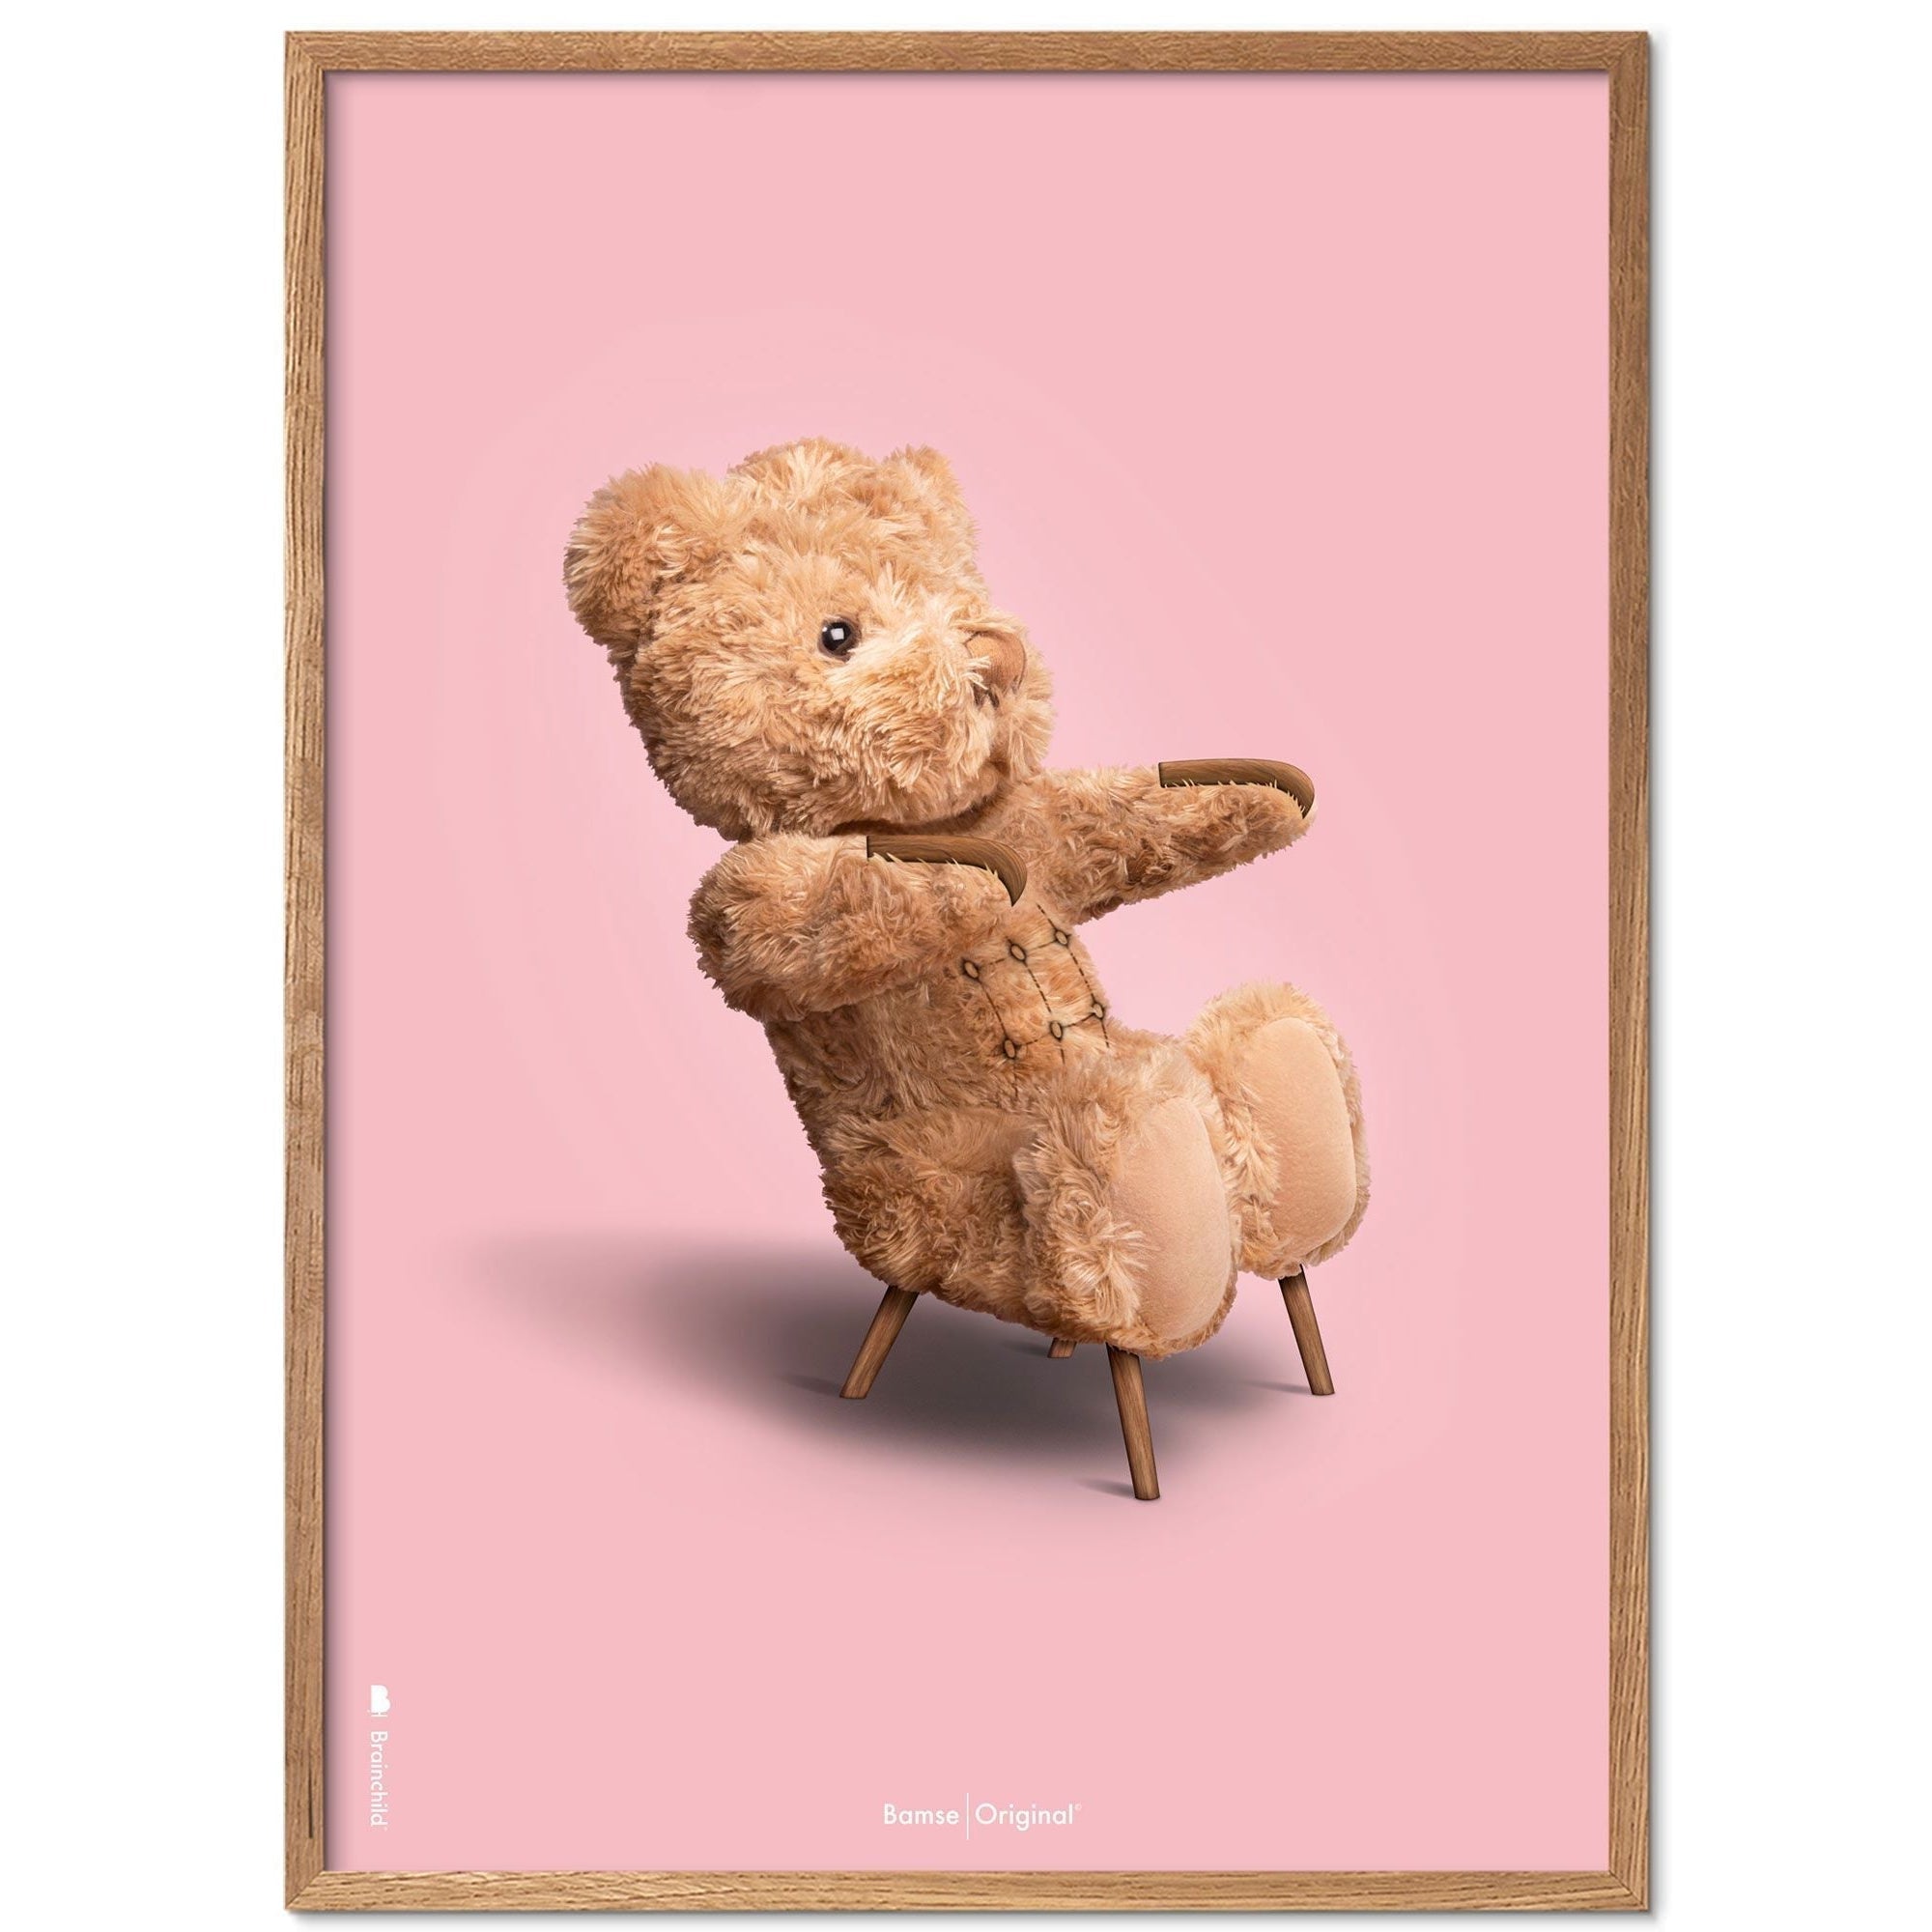 Brainchild Teddybär Klassischer Posterrahmen aus hellem Holz Ramme 50x70 Cm, Rosa Hintergrund